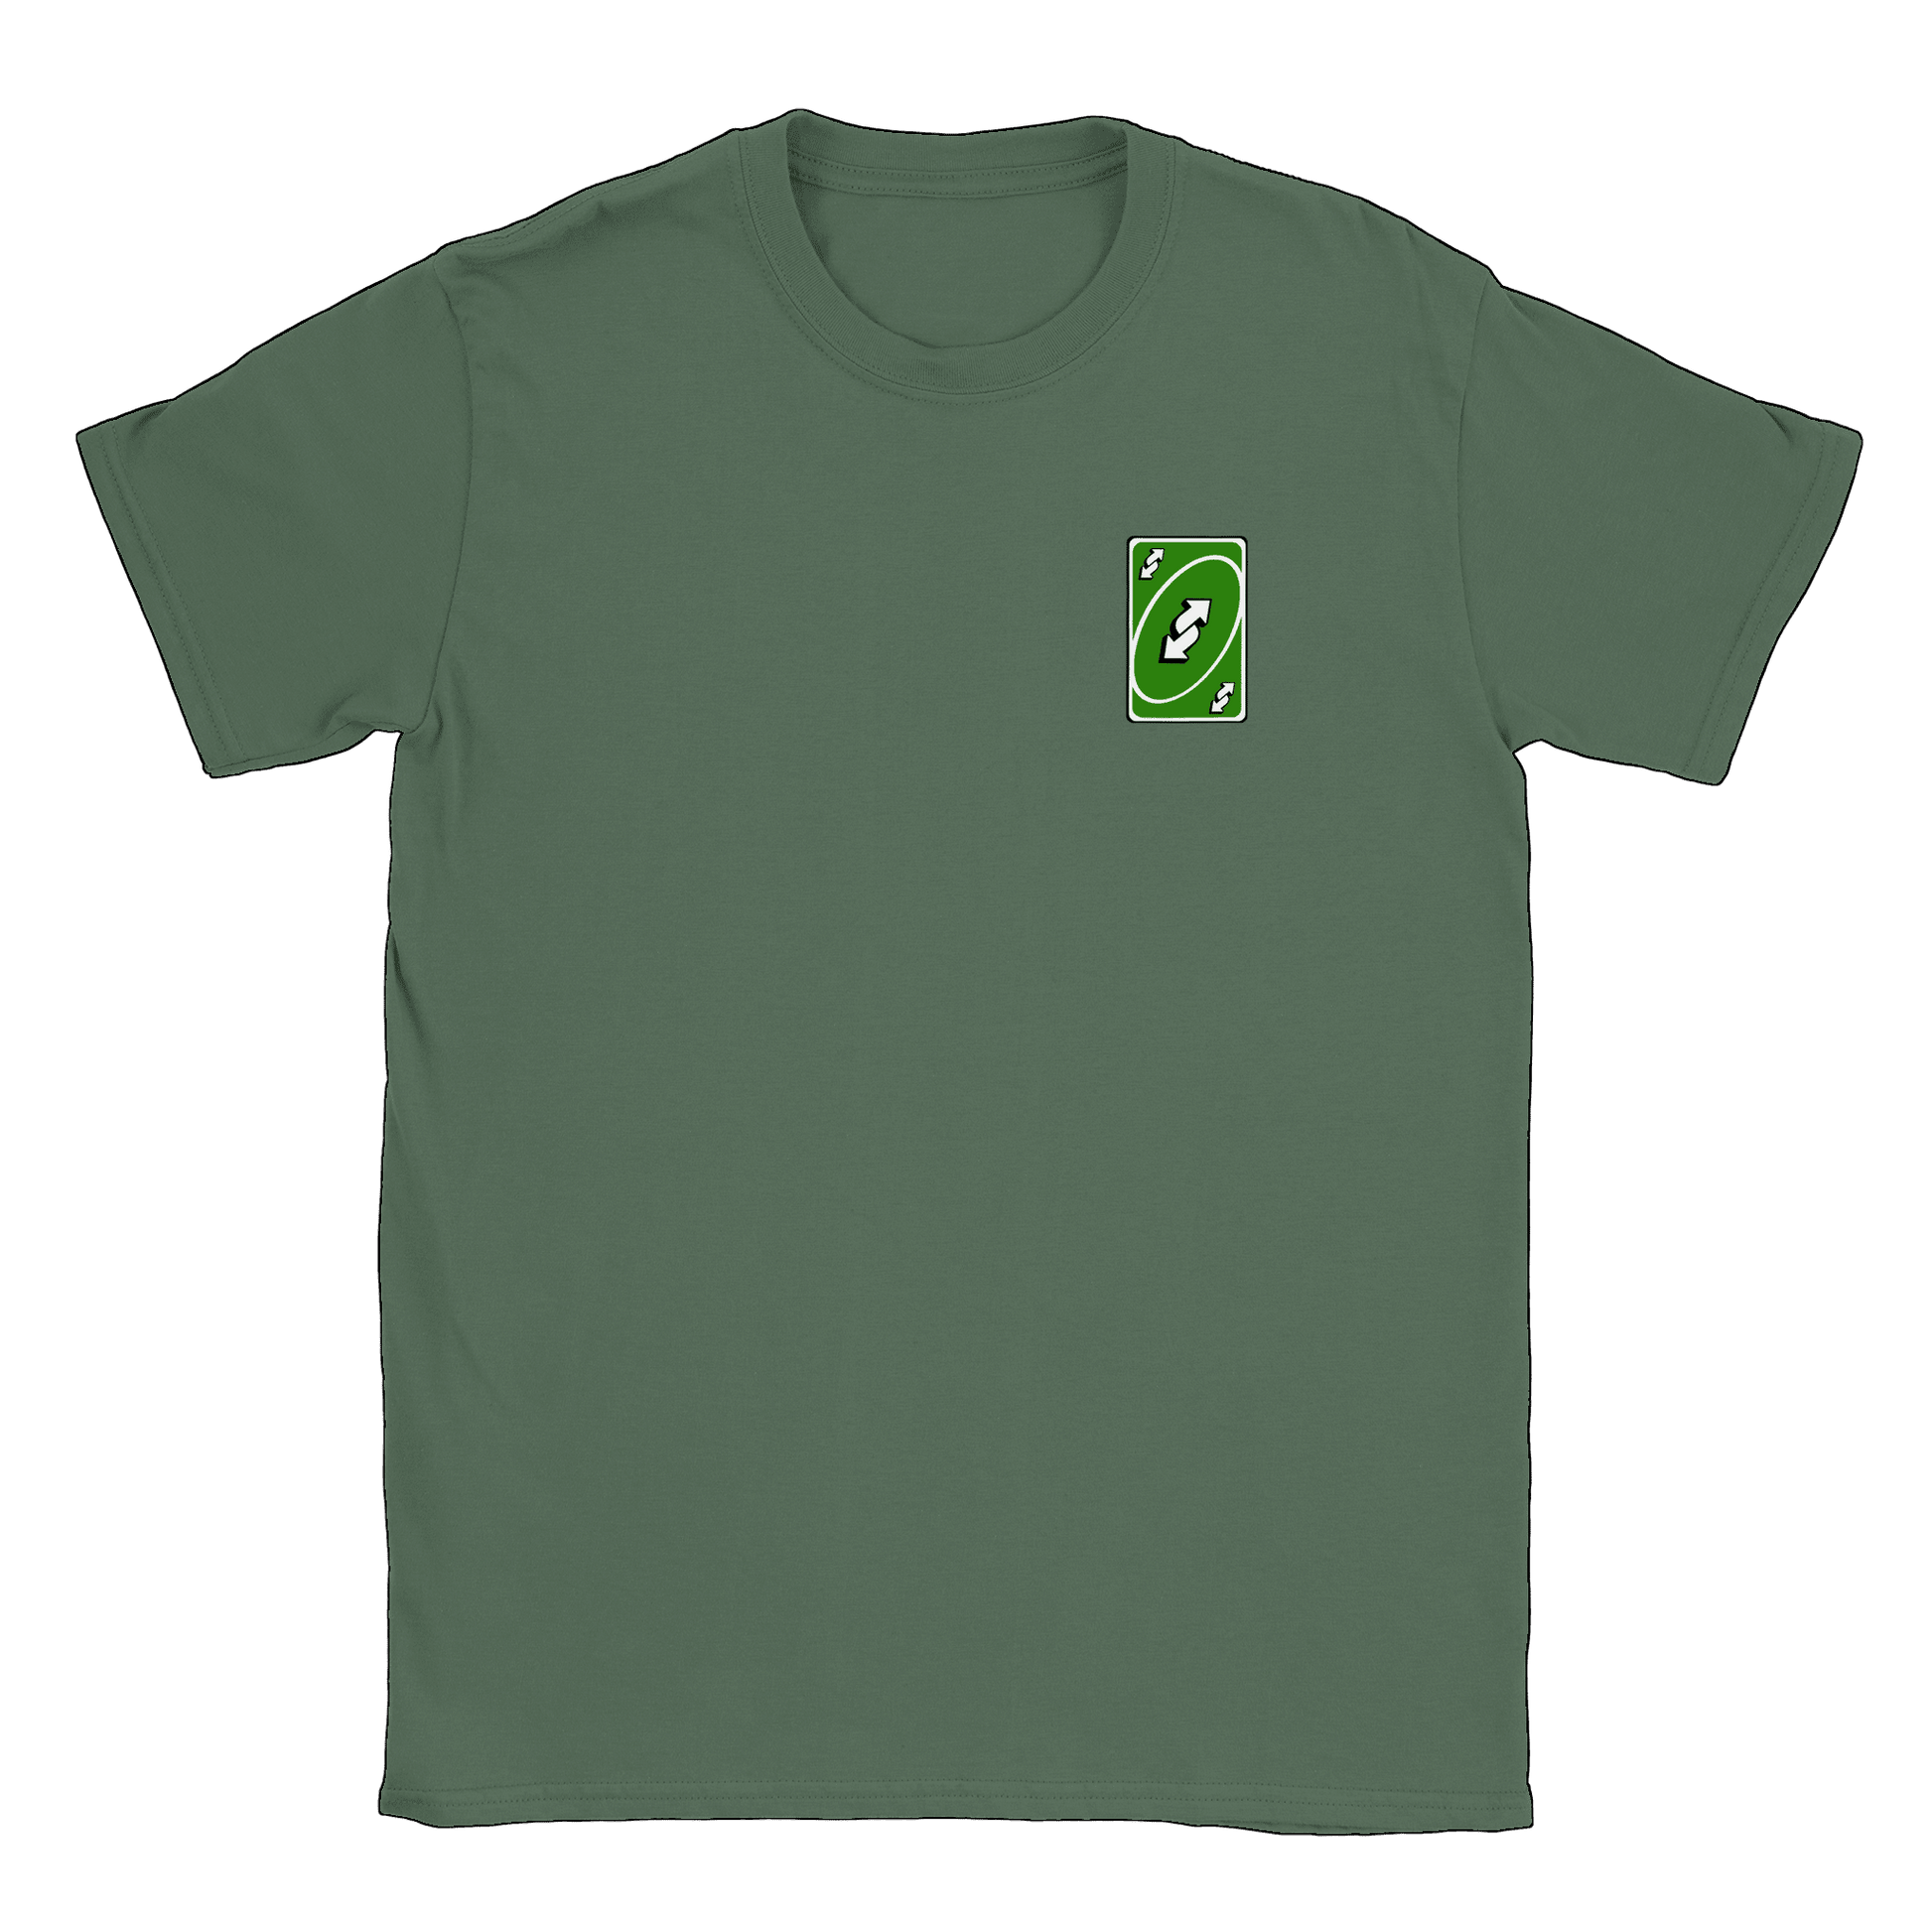 Vändkort litet - T-shirt Military Green